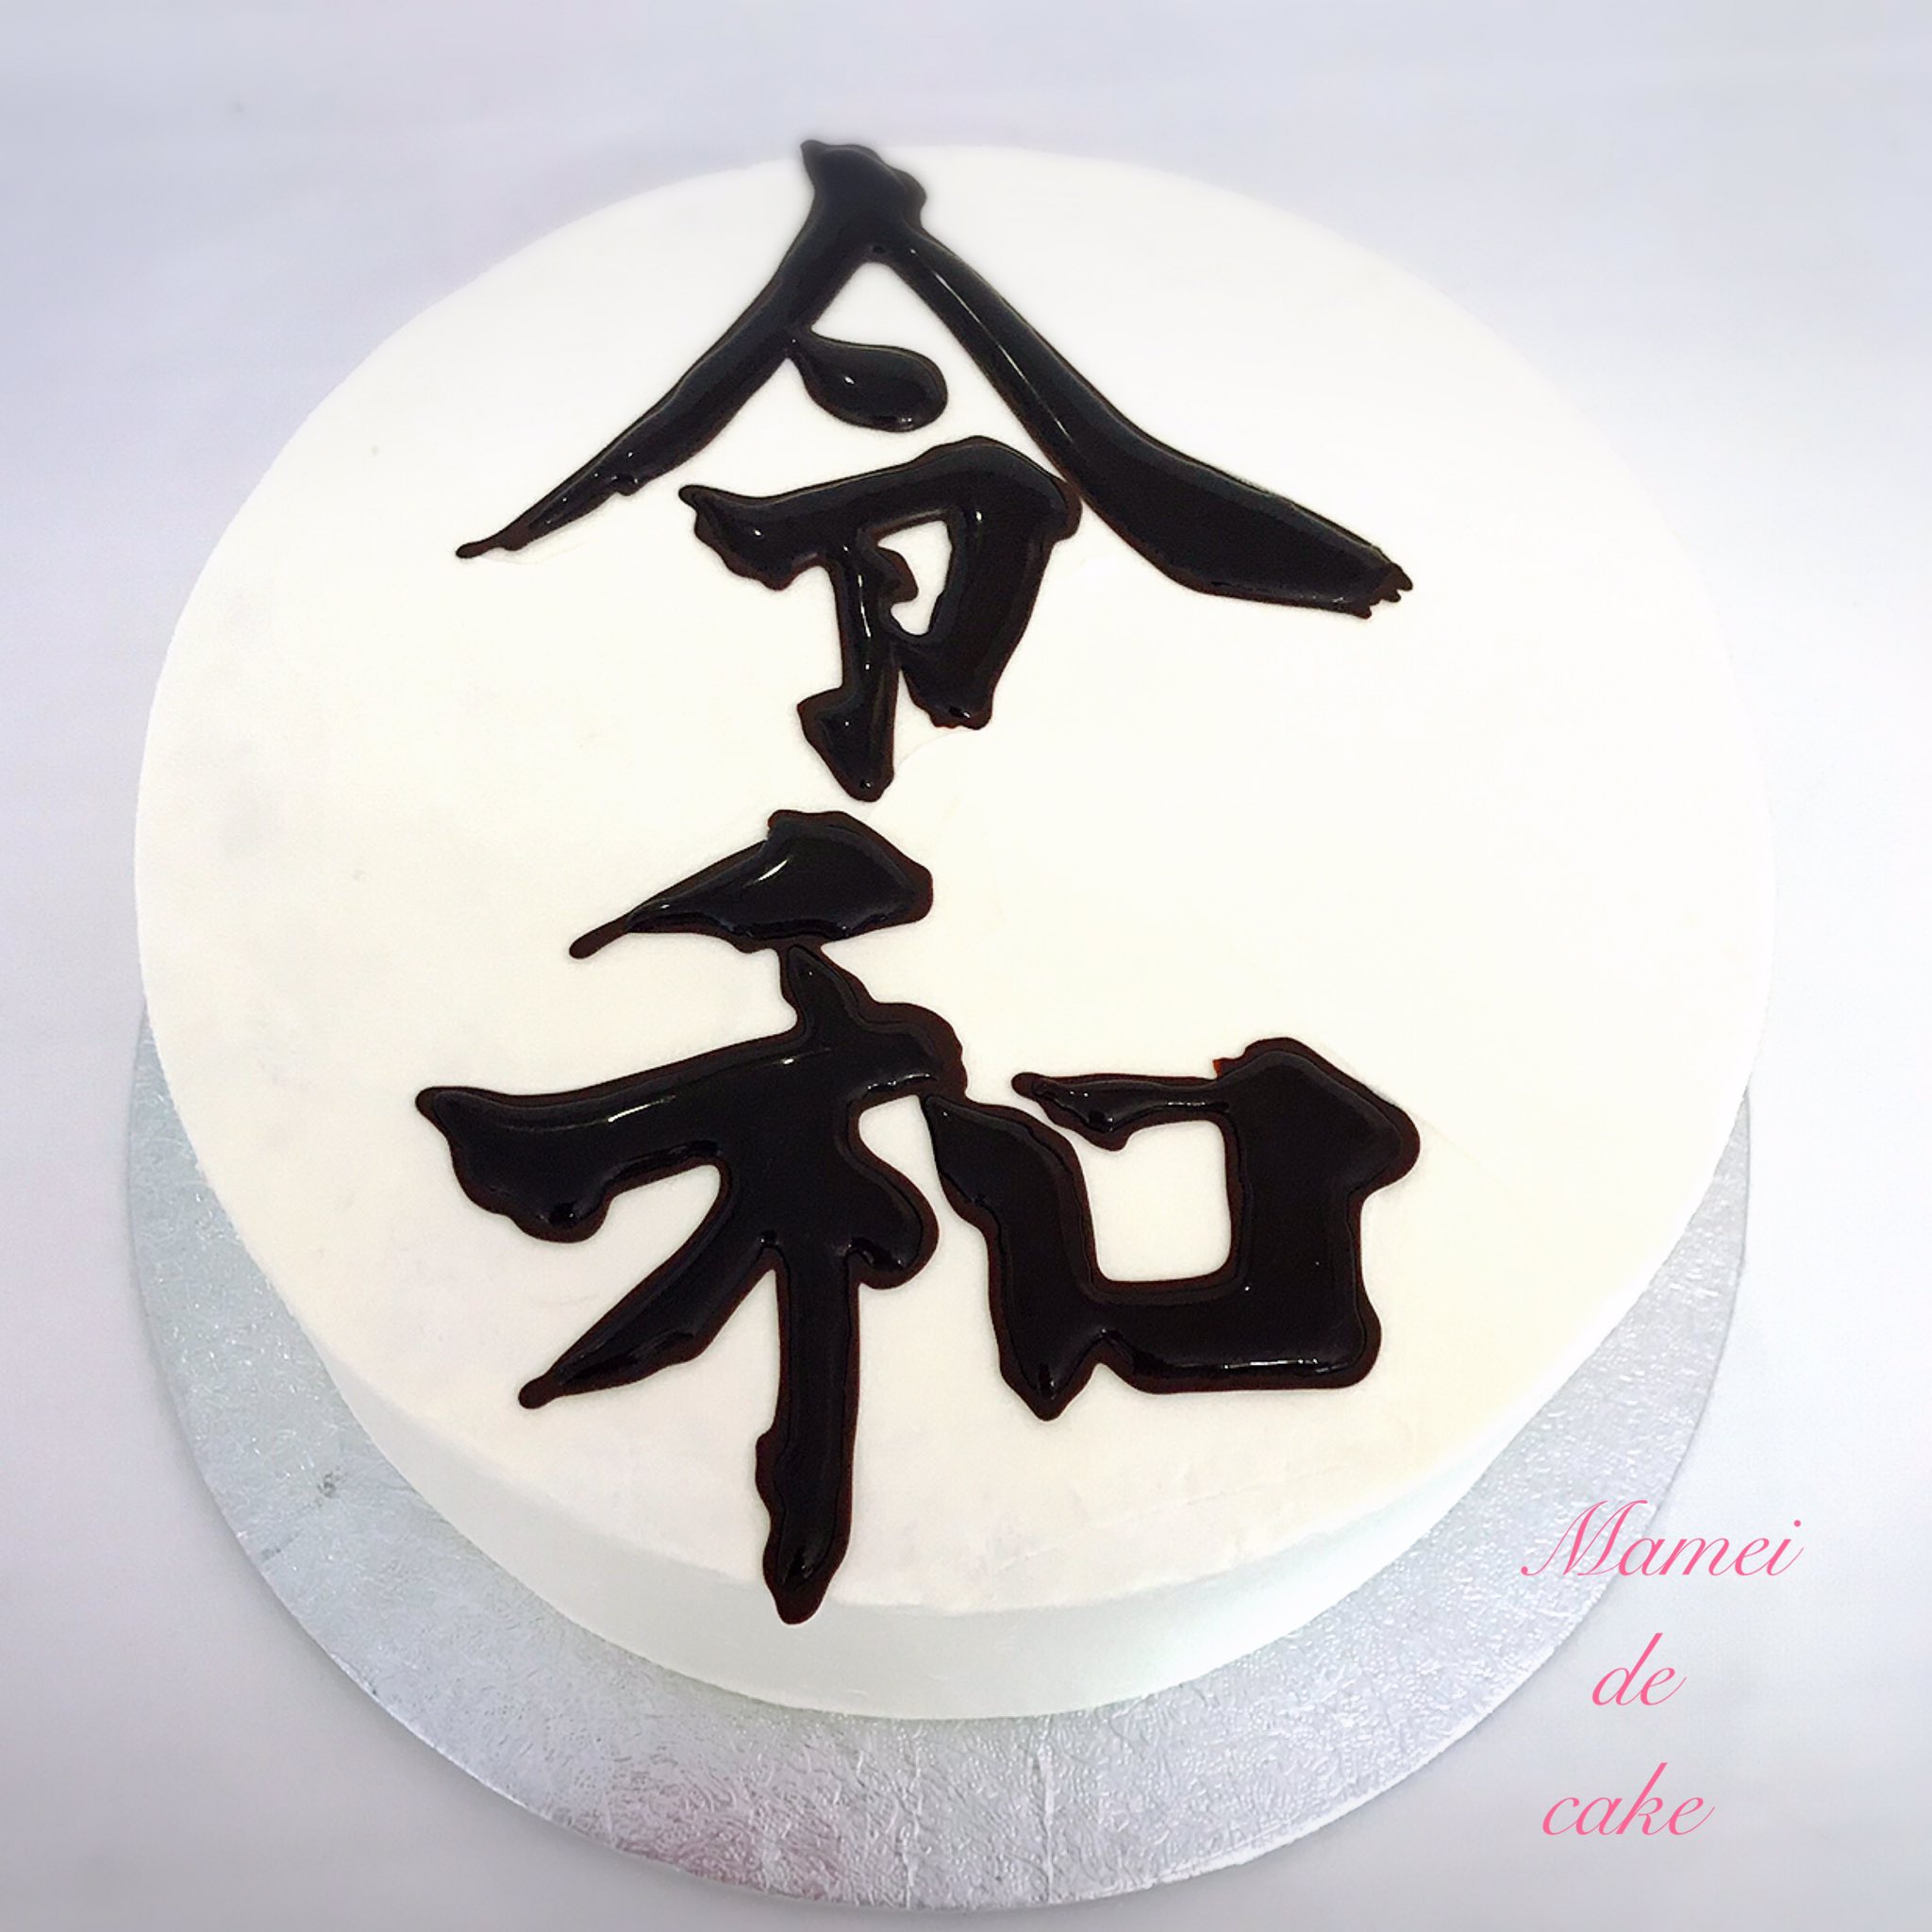 Mamei De Cake マーメイドケーキ 先程 新元号発表がありました 令 和 れいわ 発表された文字を元に急いでケーキにしました 平成も残り1カ月になりました 令和はどんな時代になるでしょうか 令和 平成 新元号 れいわ 令和ケーキ